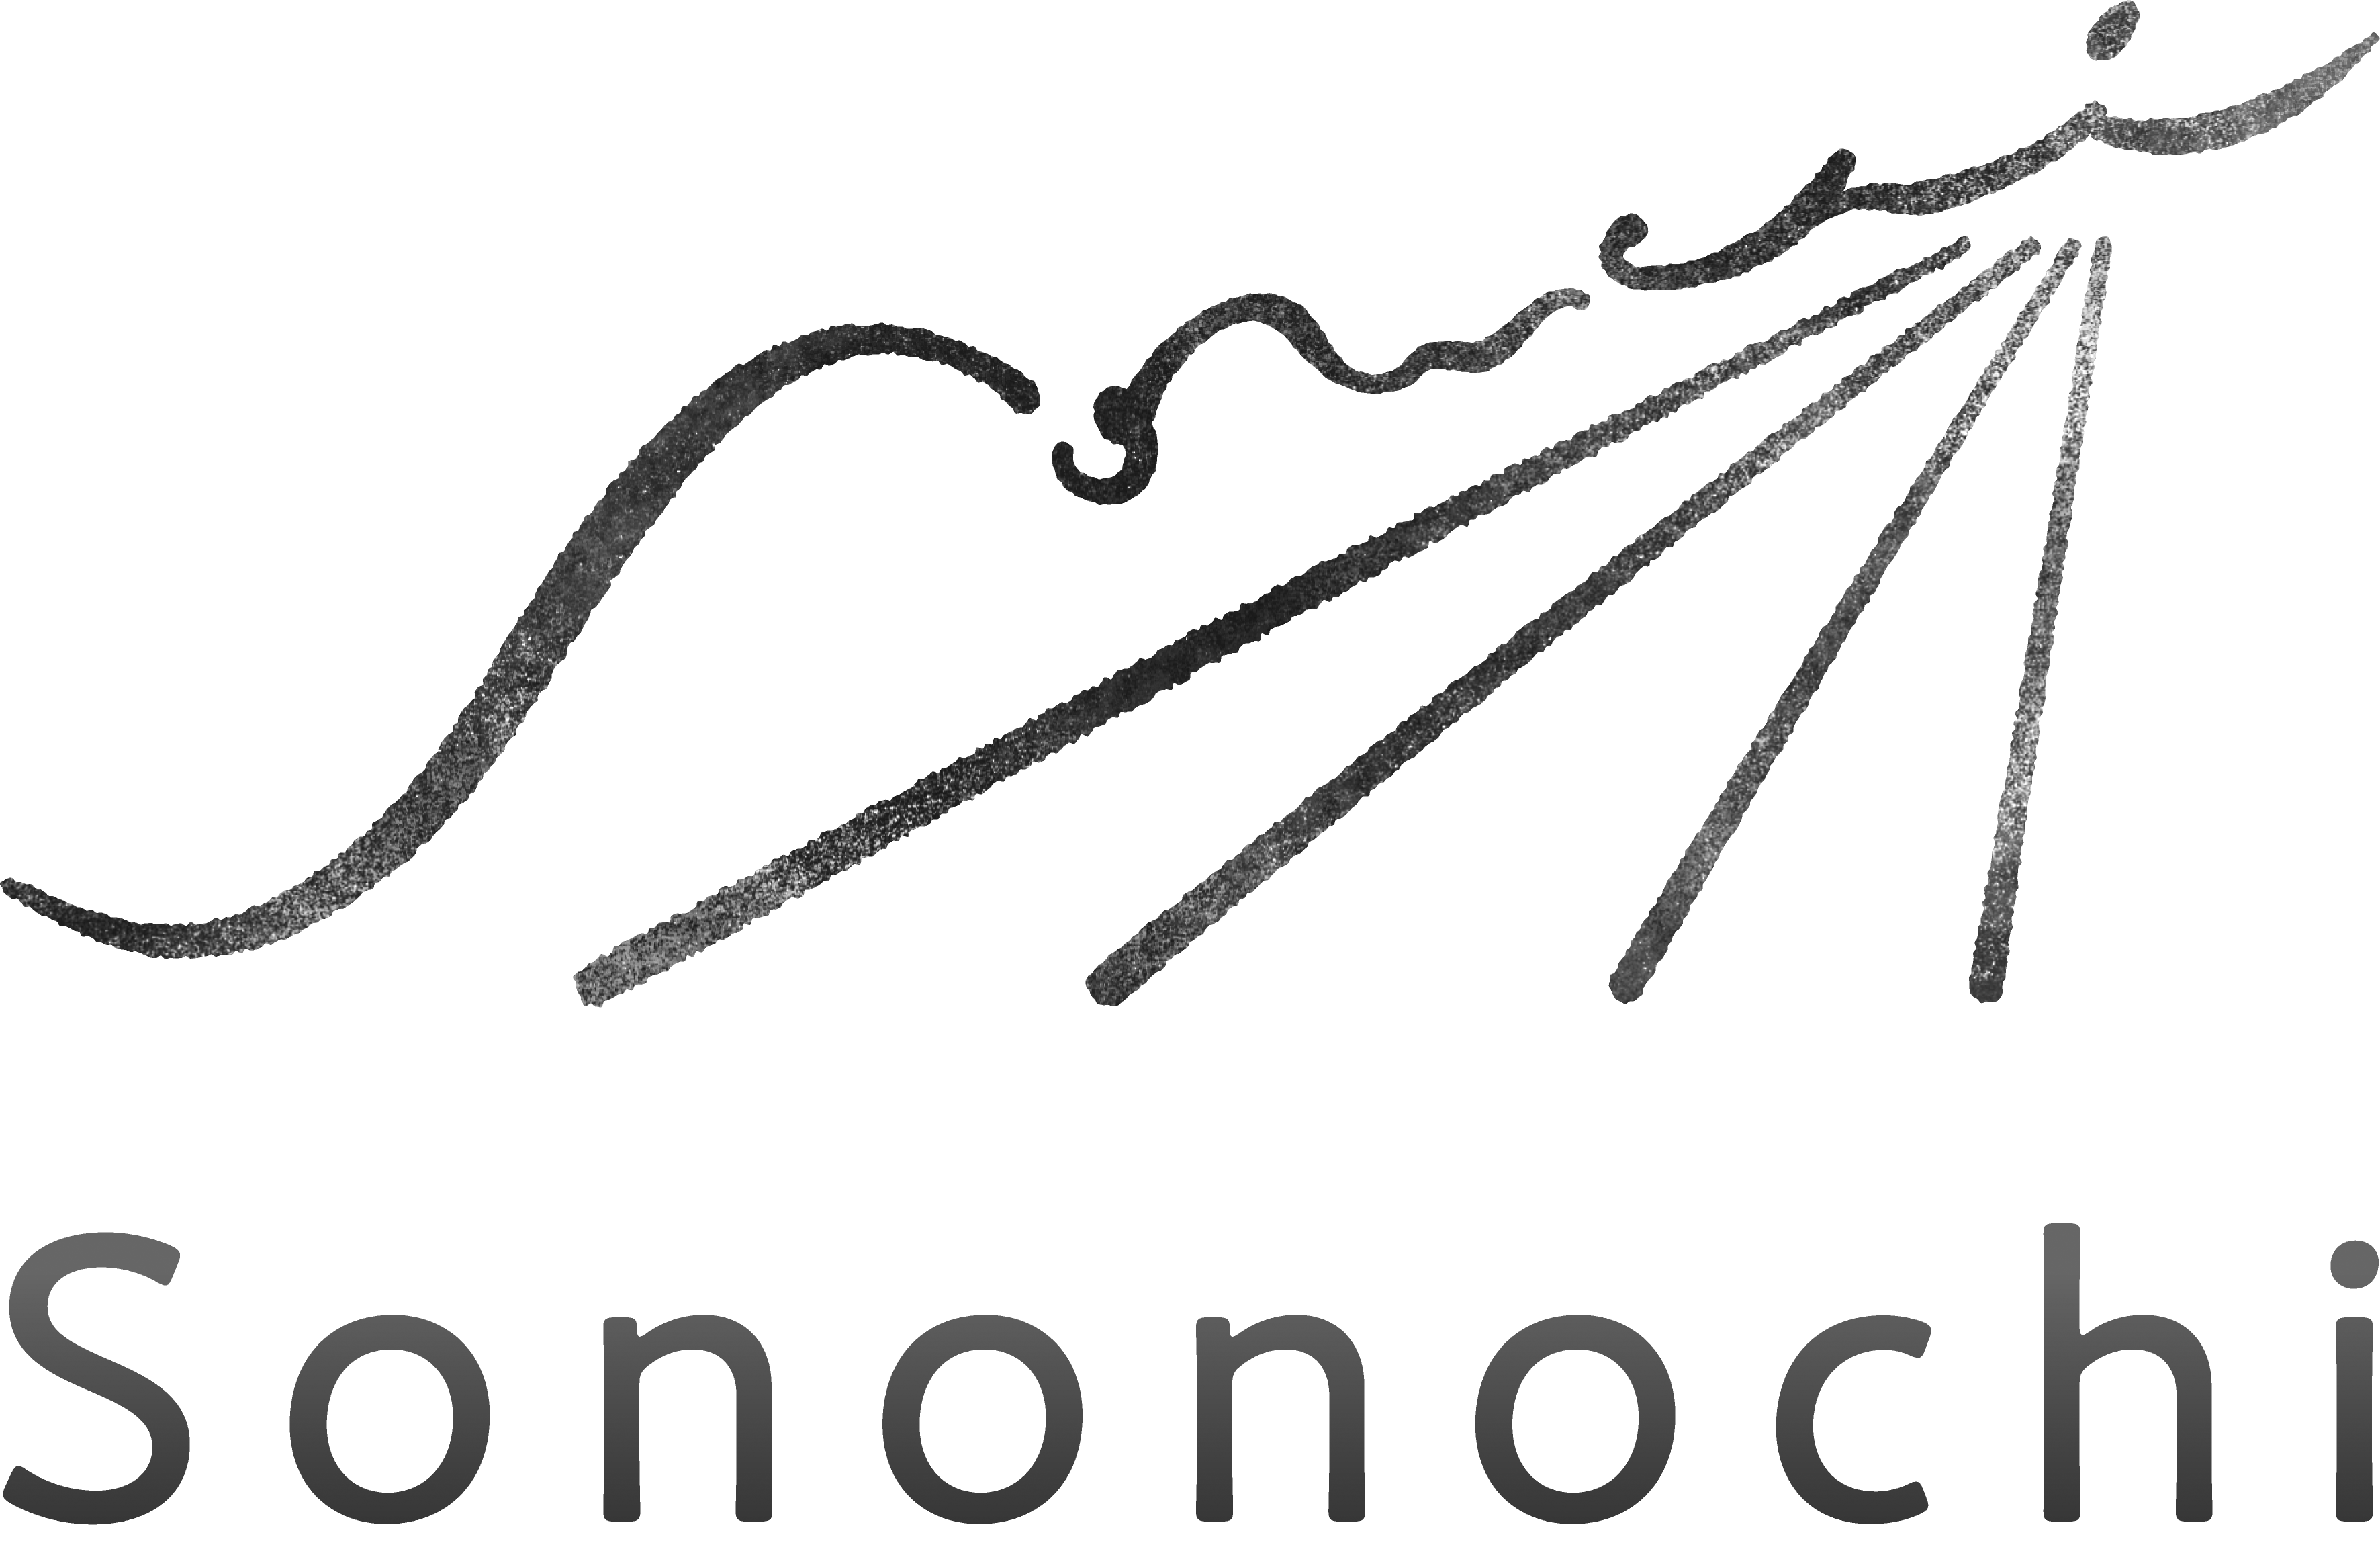 Sononochi official website